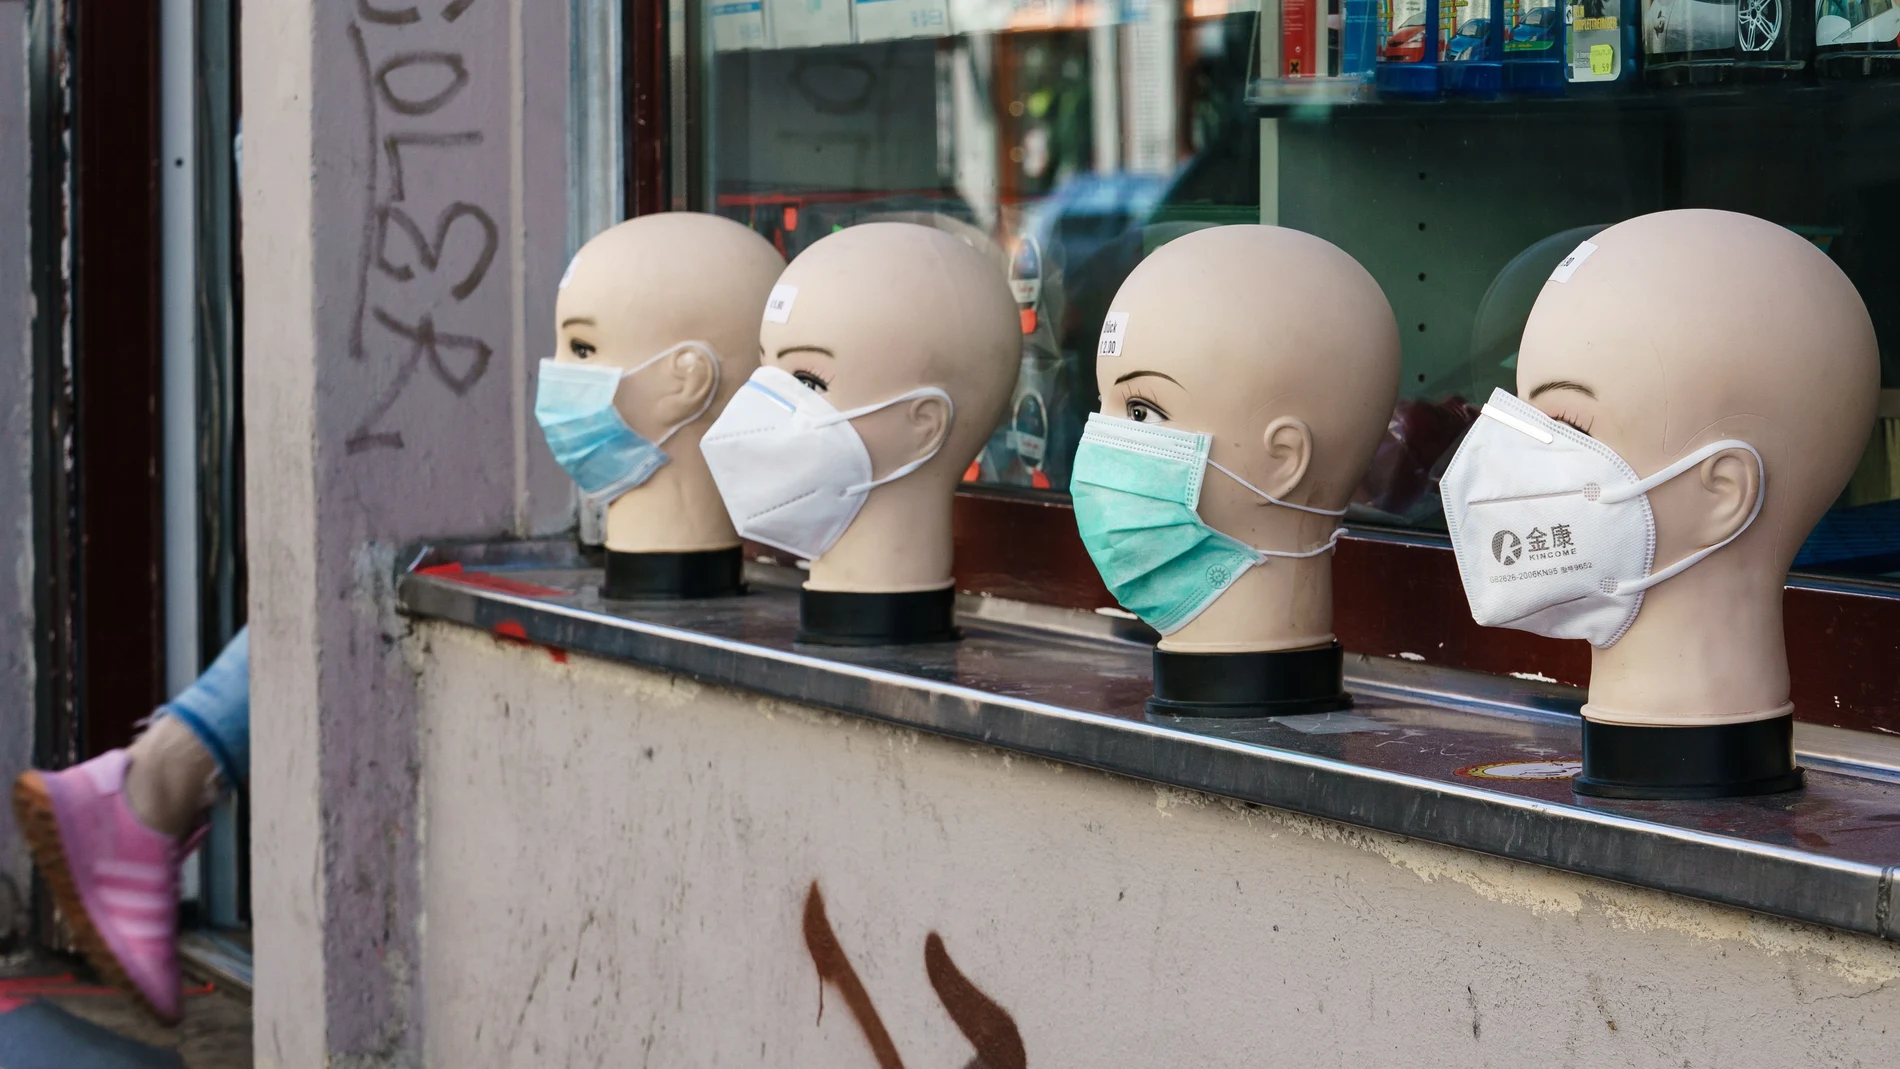 El precio de las mascarillas se ha disparado entre un 700 y un 800% durante la crisis del coronavirus